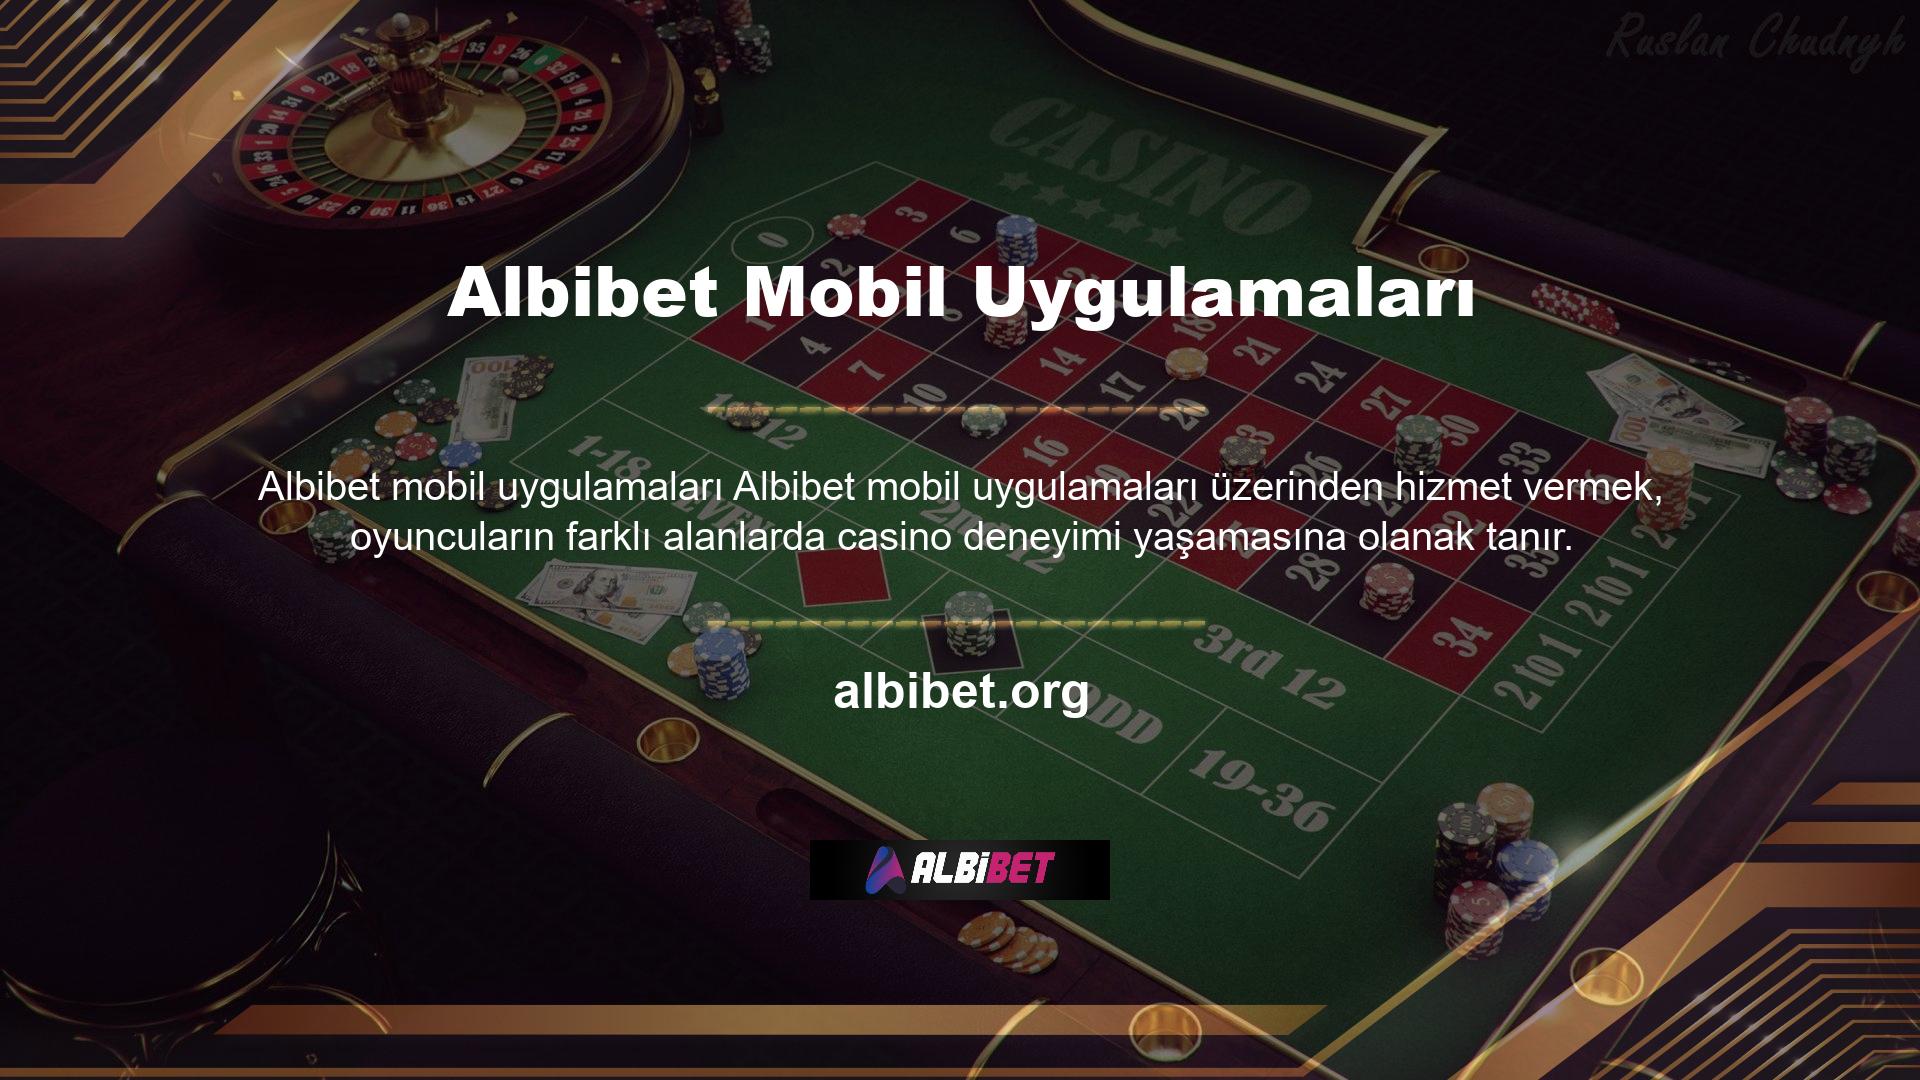 Mükemmel bir casino deneyimi ve kaliteli oyunlar sunan Albibet, uzun yıllardır Türkiye'de faaliyet gösteren en güçlü şirketlerden biri olmuştur